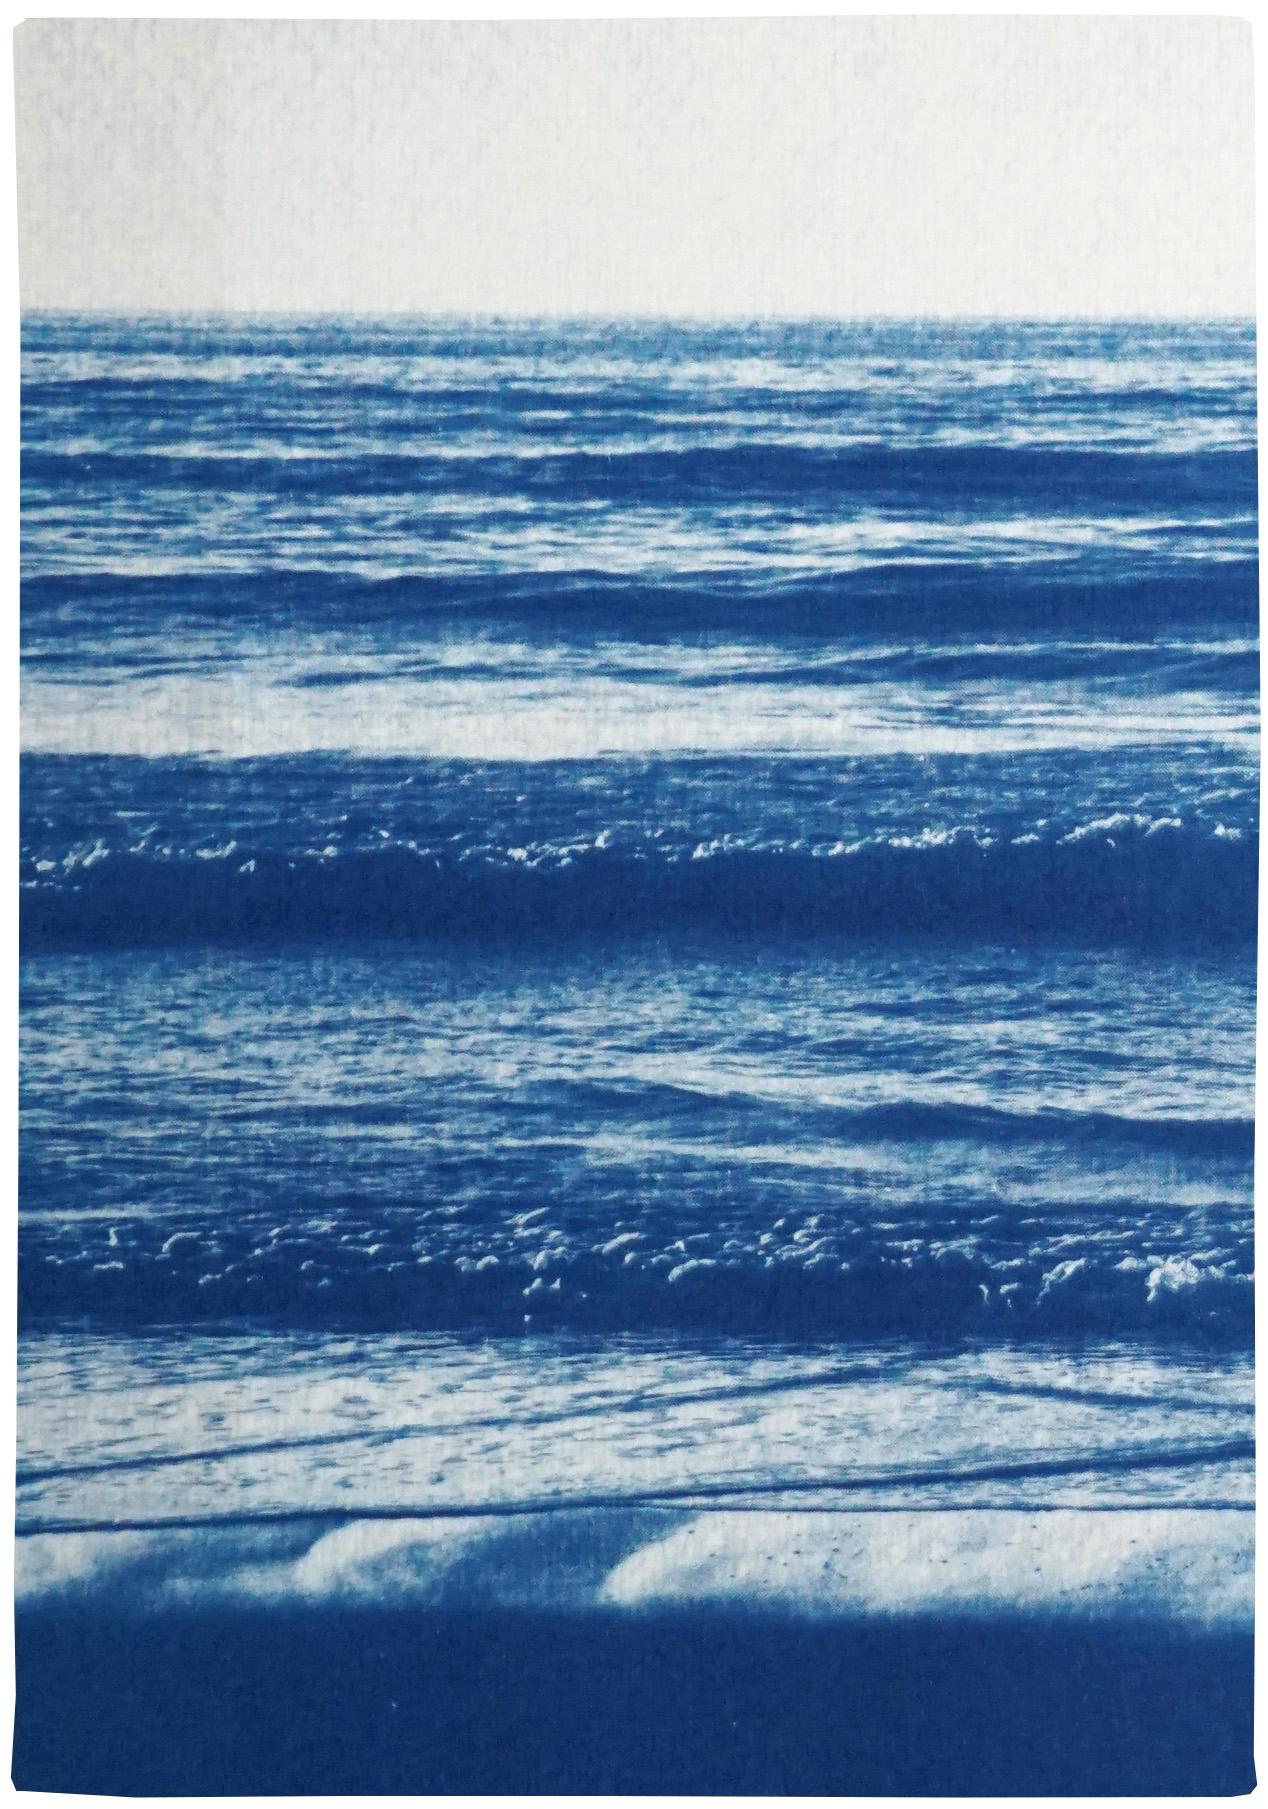 Horizon de plage du Pacifique, Triptyque nautique cyanotype, paysage marin blanc et bleu, Zen - Bleu Landscape Photograph par Kind of Cyan